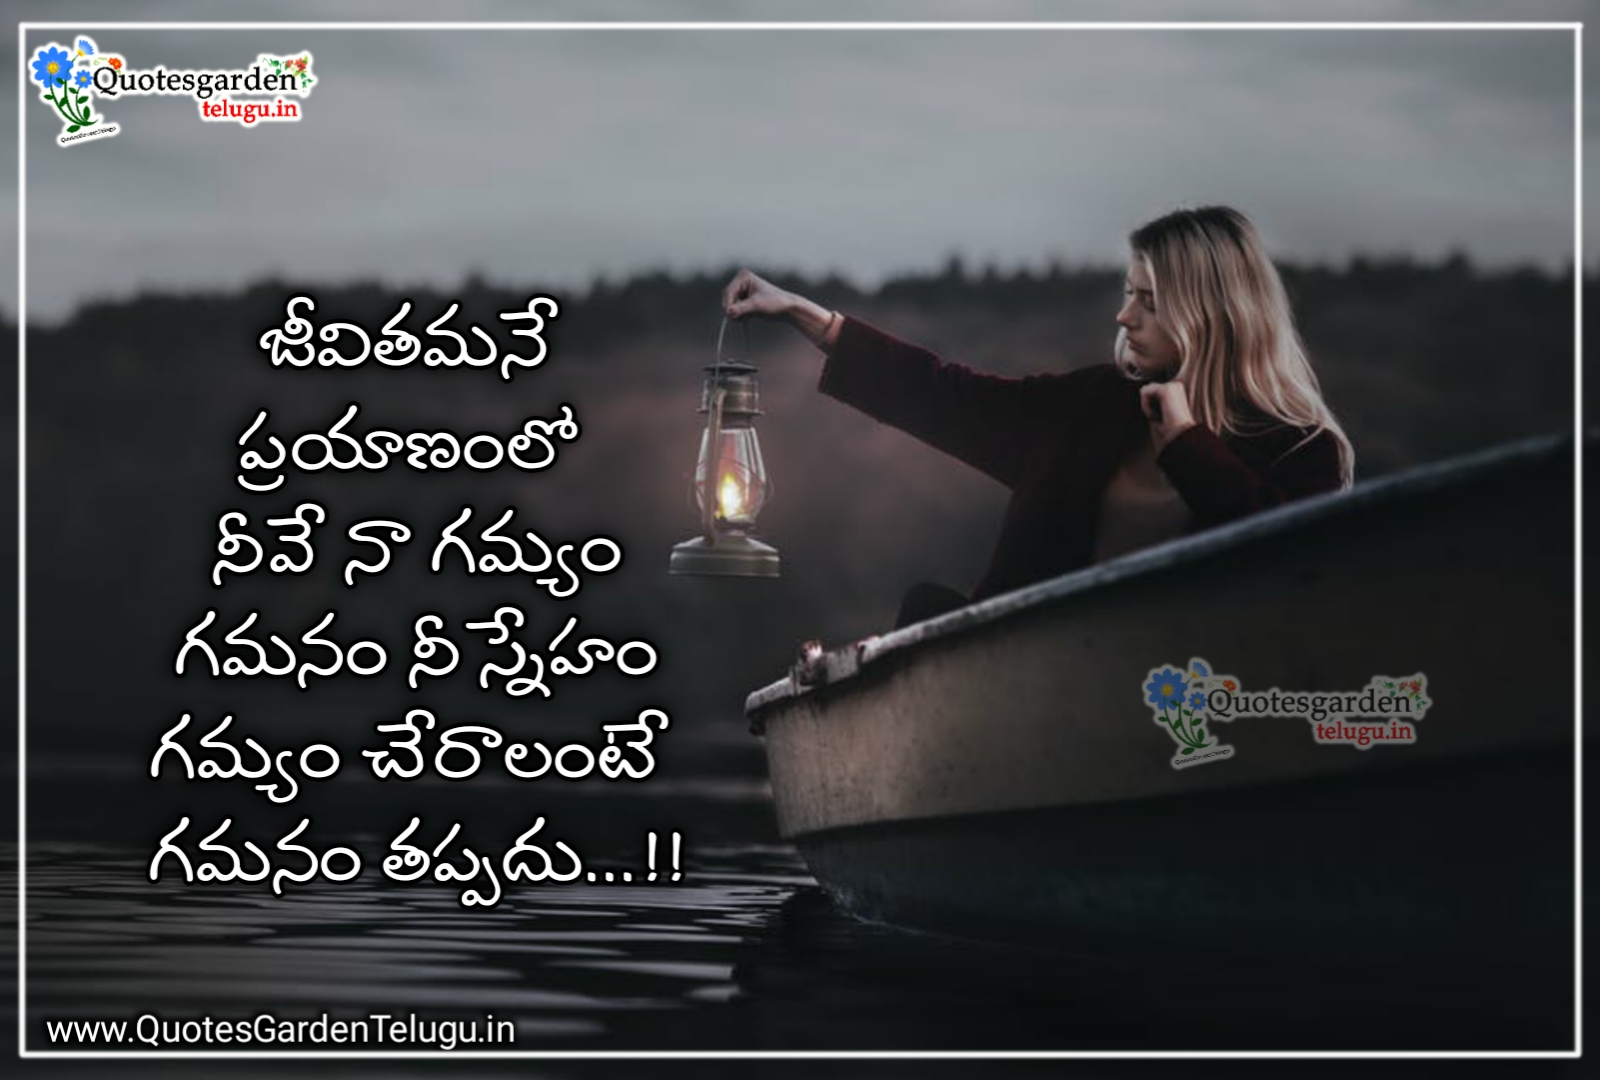 Telugu Love quotes 2021 | QUOTES GARDEN TELUGU | Telugu Quotes ...